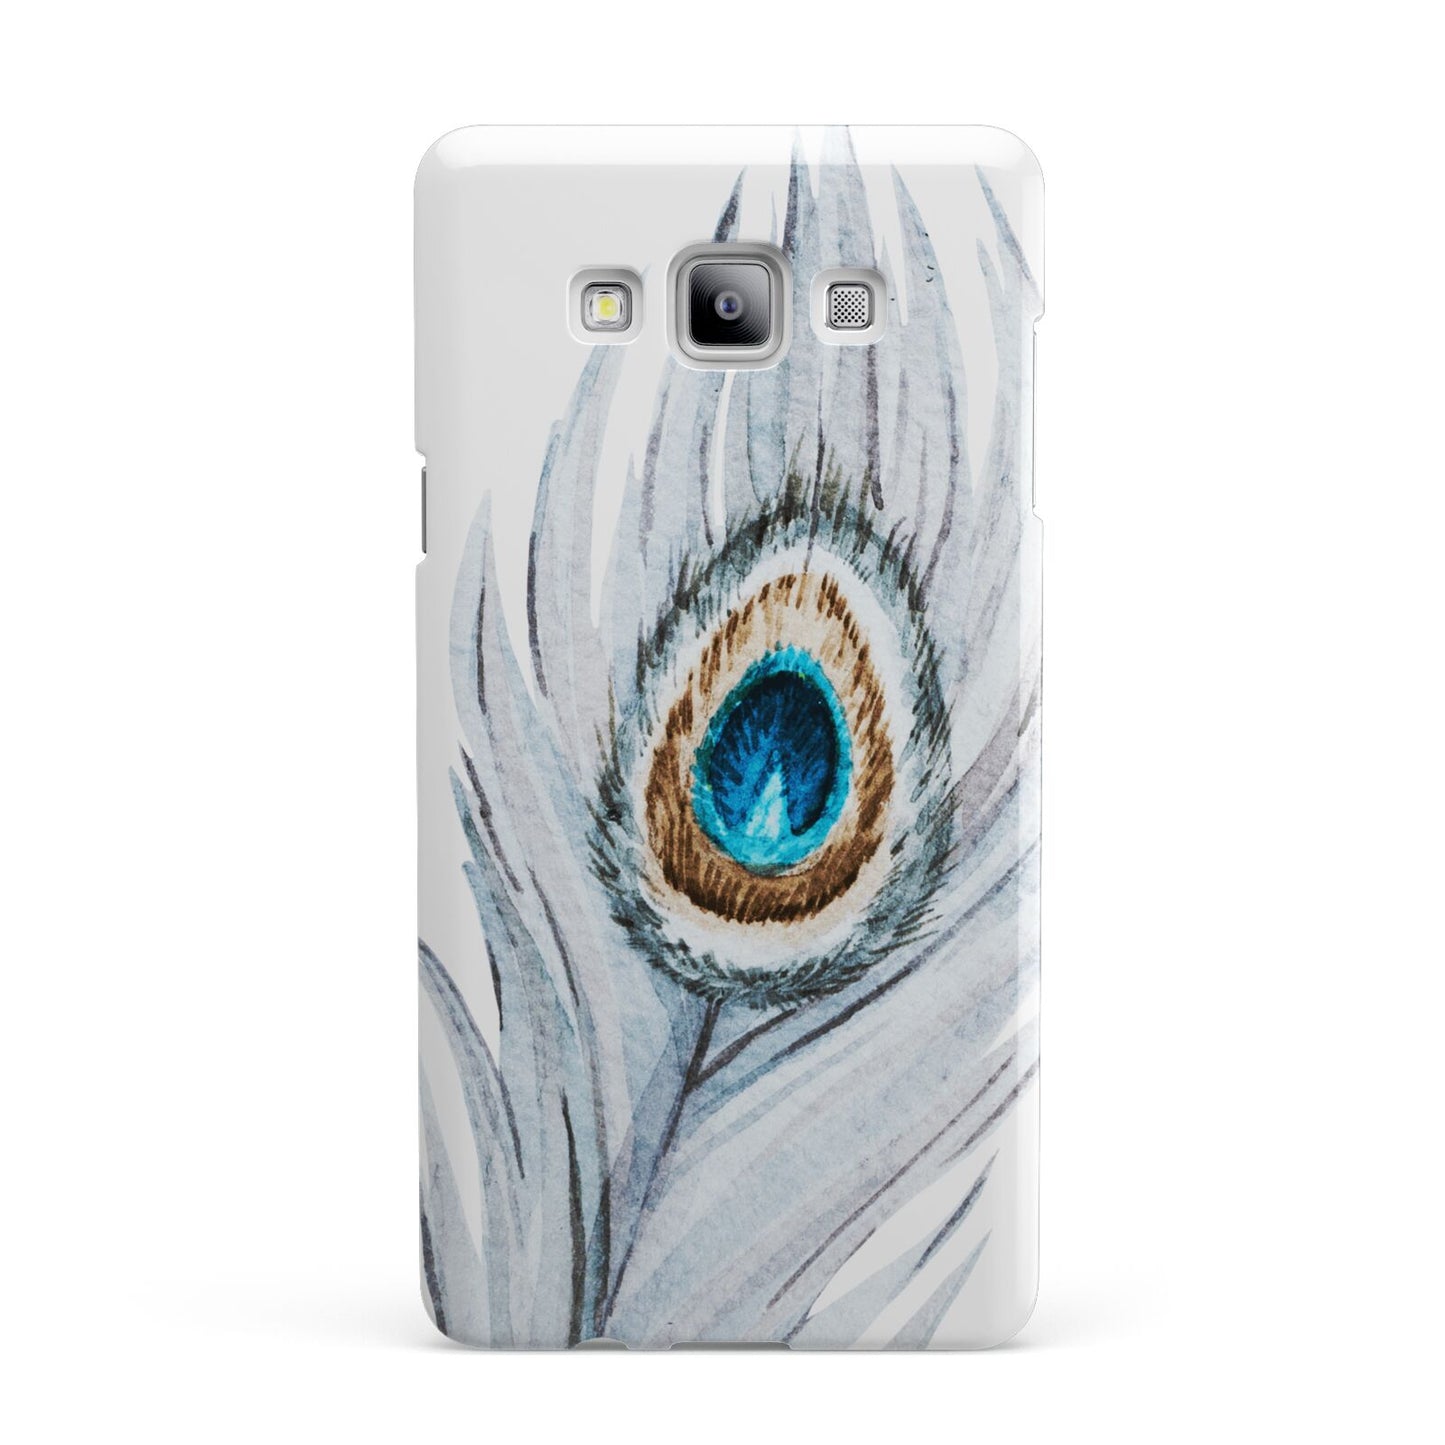 Peacock Samsung Galaxy A7 2015 Case